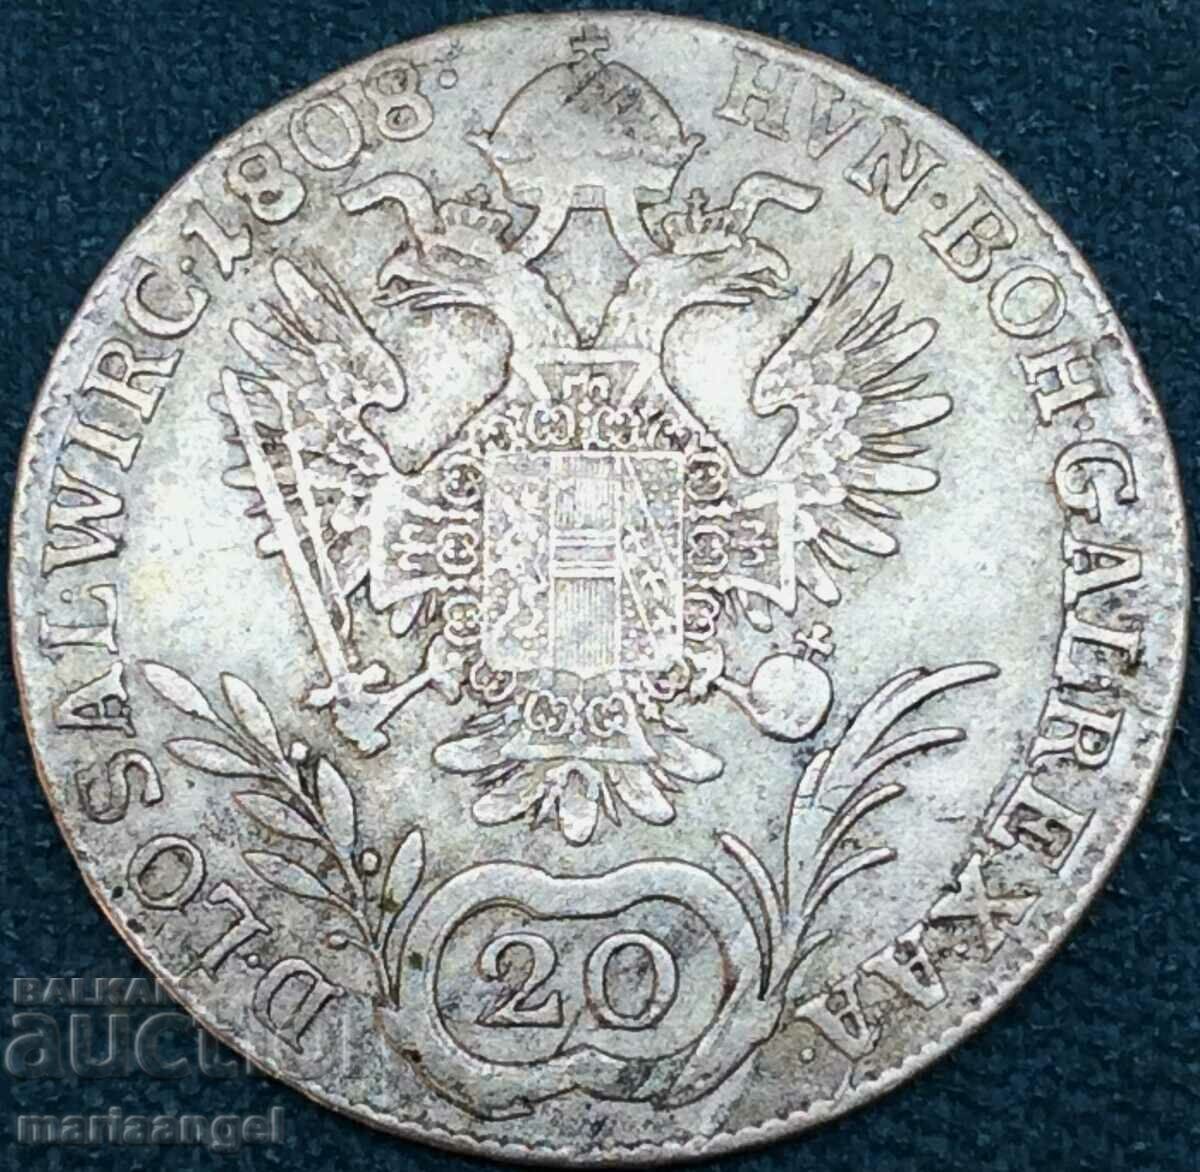 20 kreutzers 1808 A - Vienna Austria silver